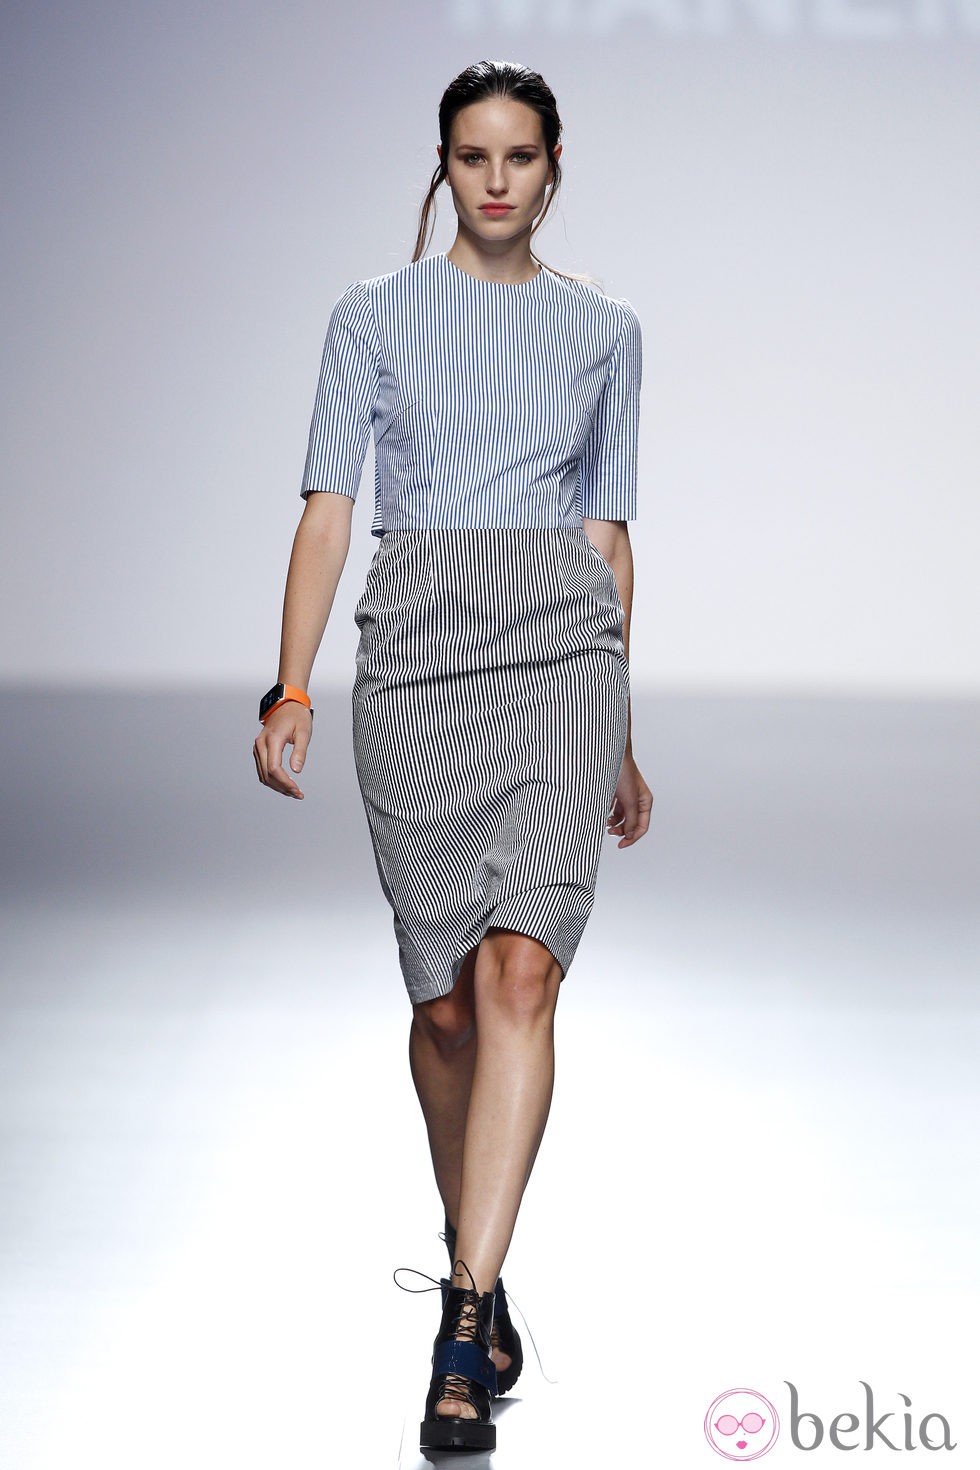 Vestido gris y azul de la colección primavera/verano 2014 de Manémané en la pasarela EGO Madrid Fashion Week